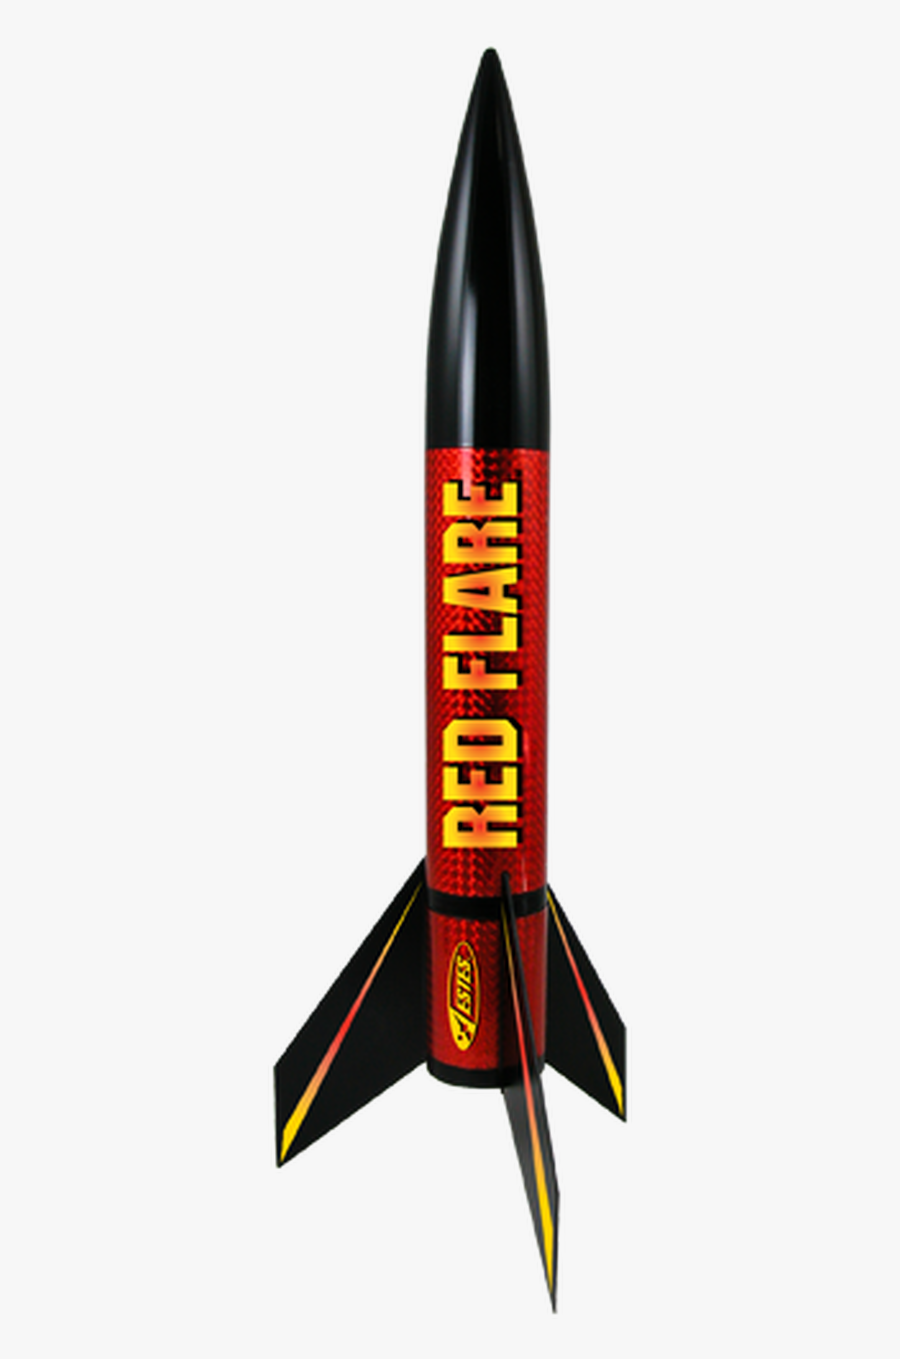 Red Flare Model Rocket - Model Rocket, Transparent Clipart